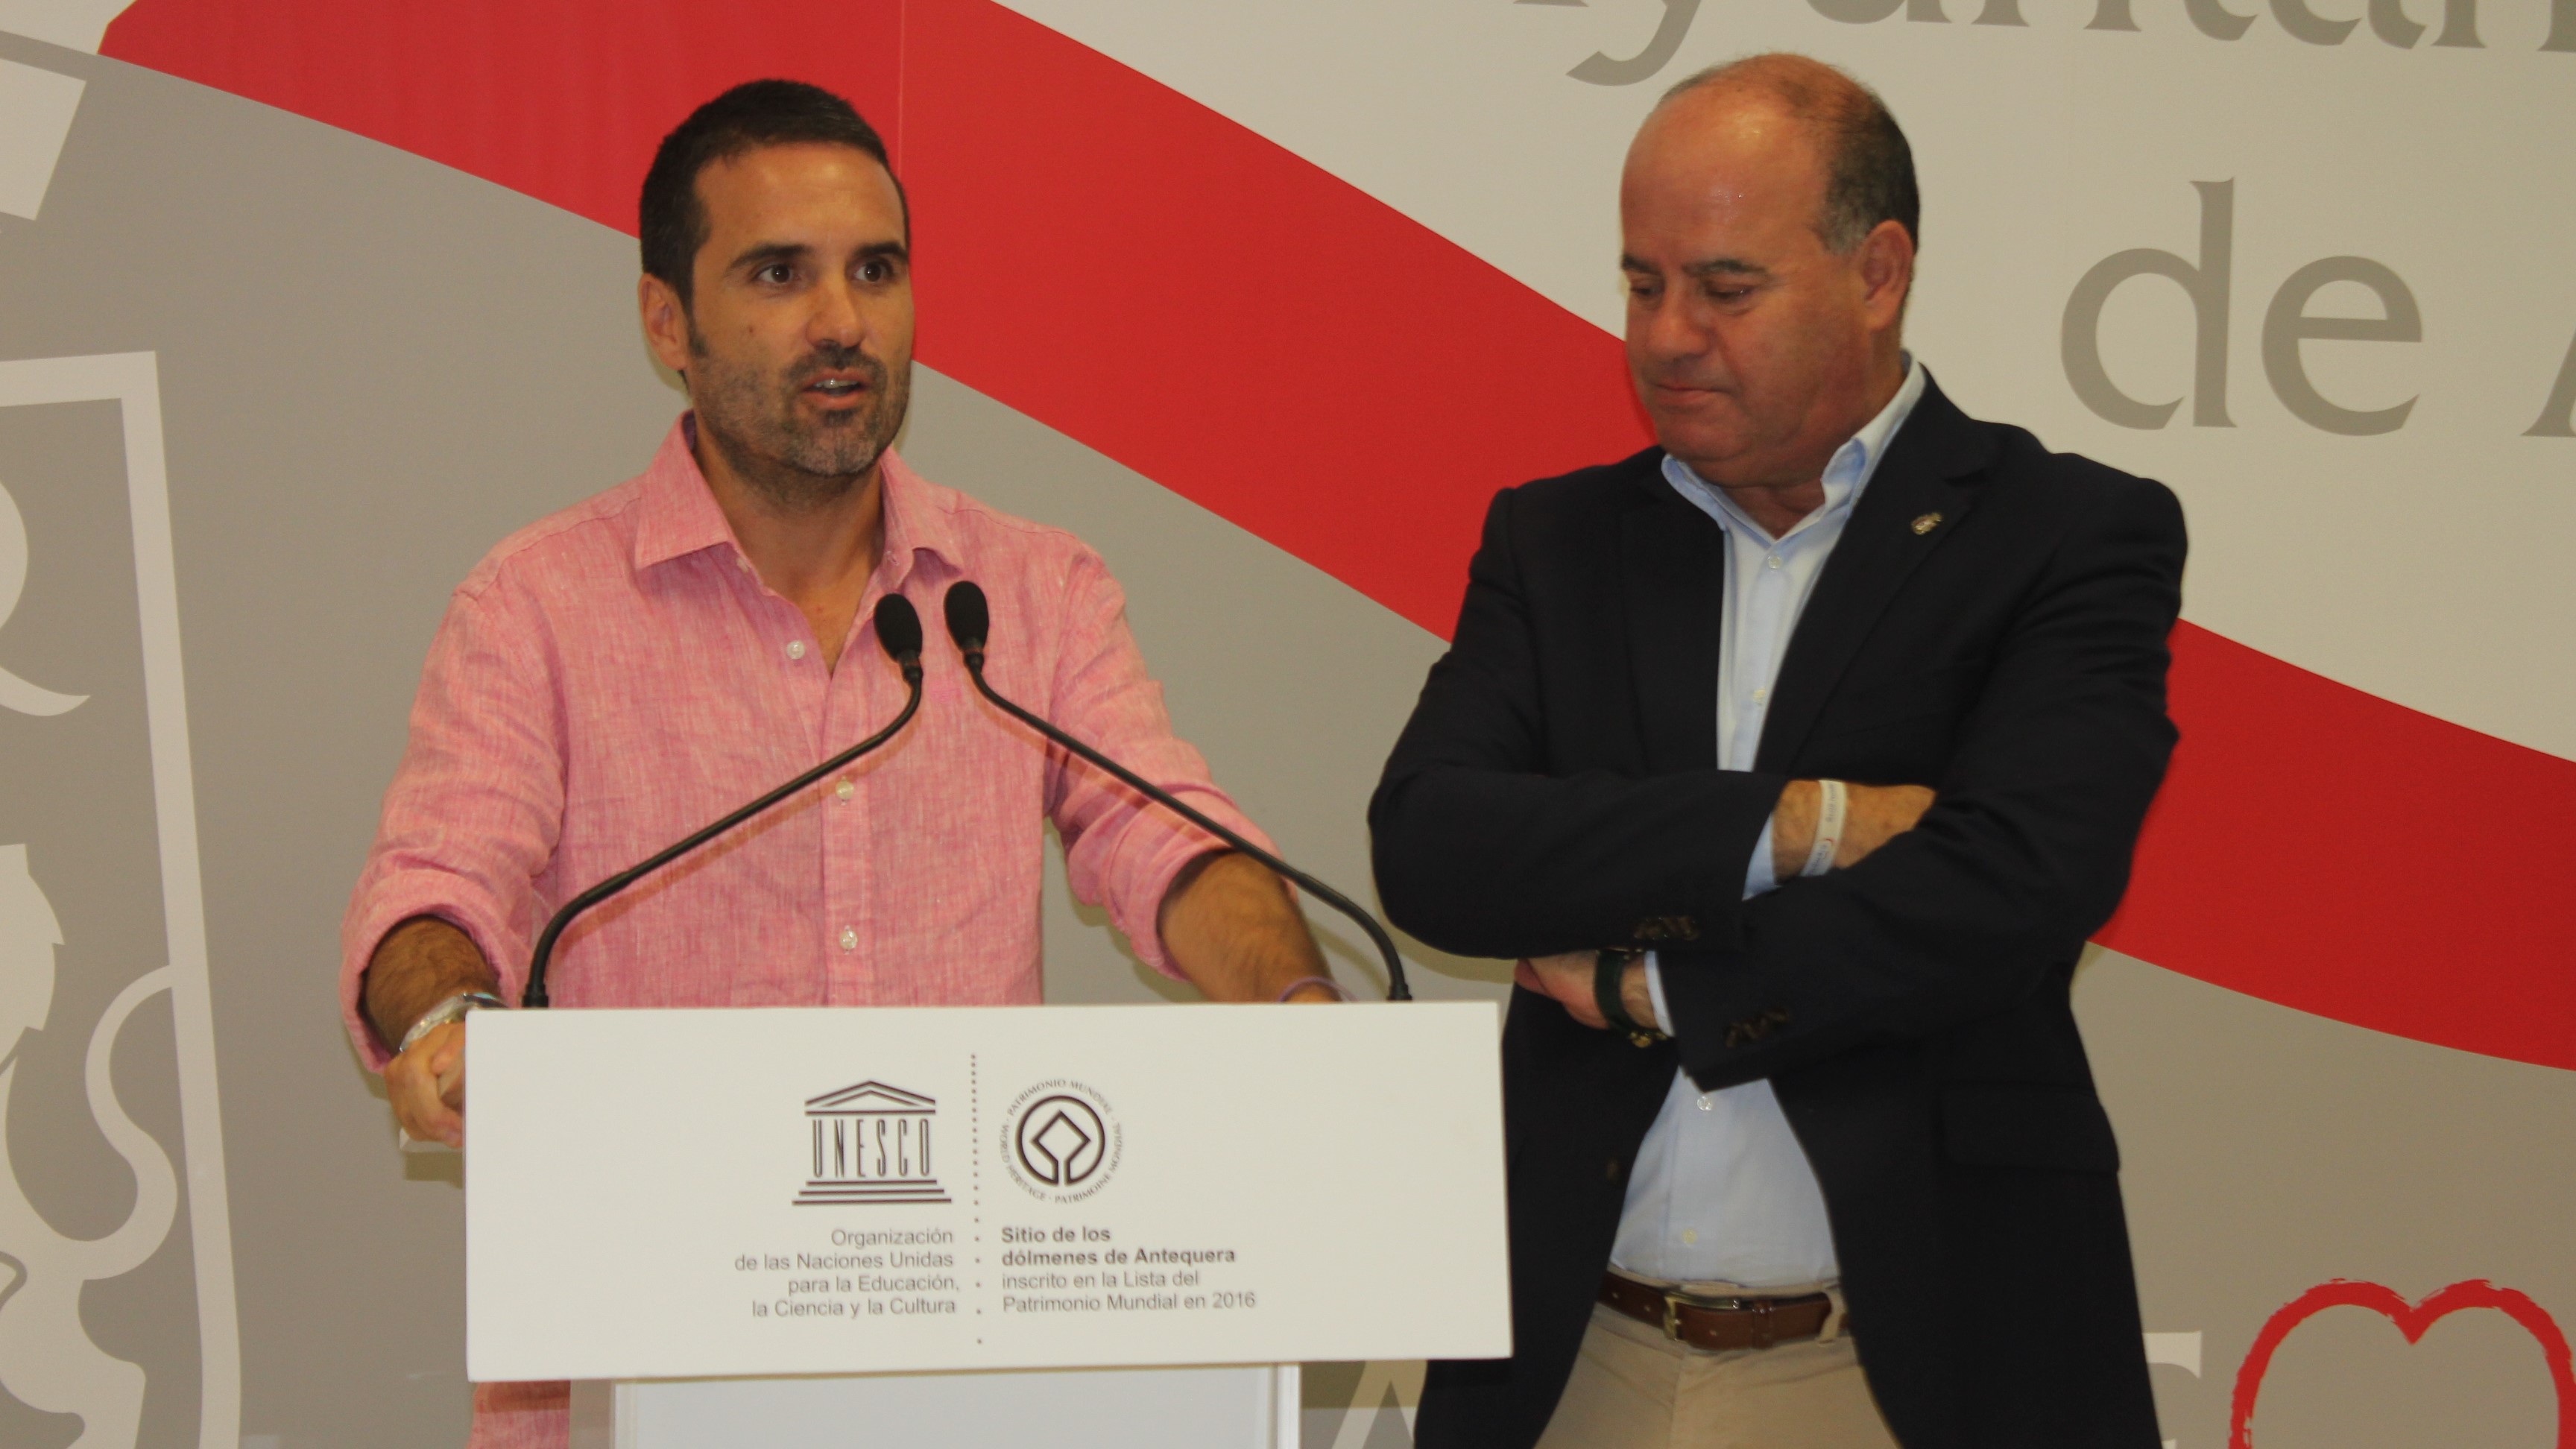 Jacobo Florido y Manolo Barón Ayuntamiento Antequera | @Clave_Economica